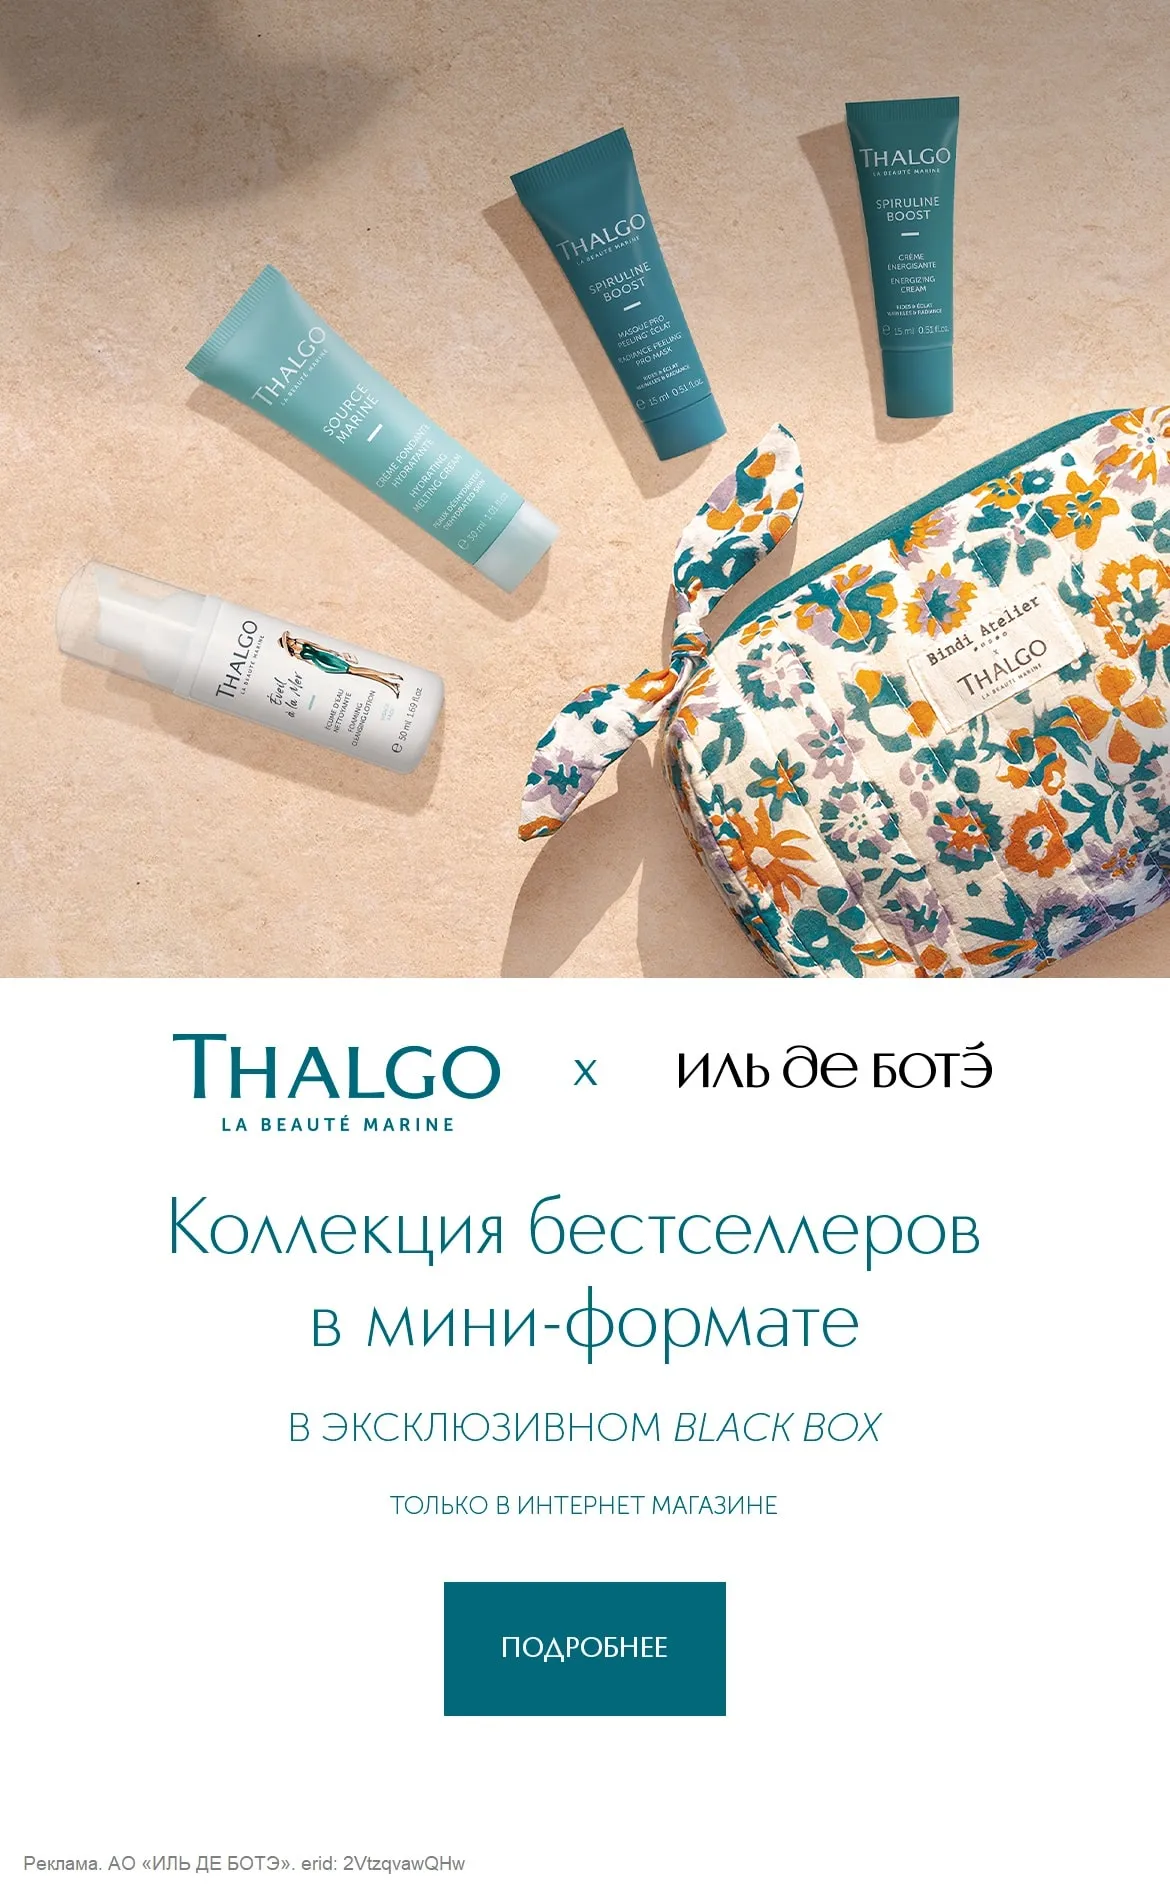 Уникальное предложение от бренда THALGO – косметичка с бестселлерами в мини-форматах в эксклюзивном боксе от ИЛЬ ДЕ БОТЭ.